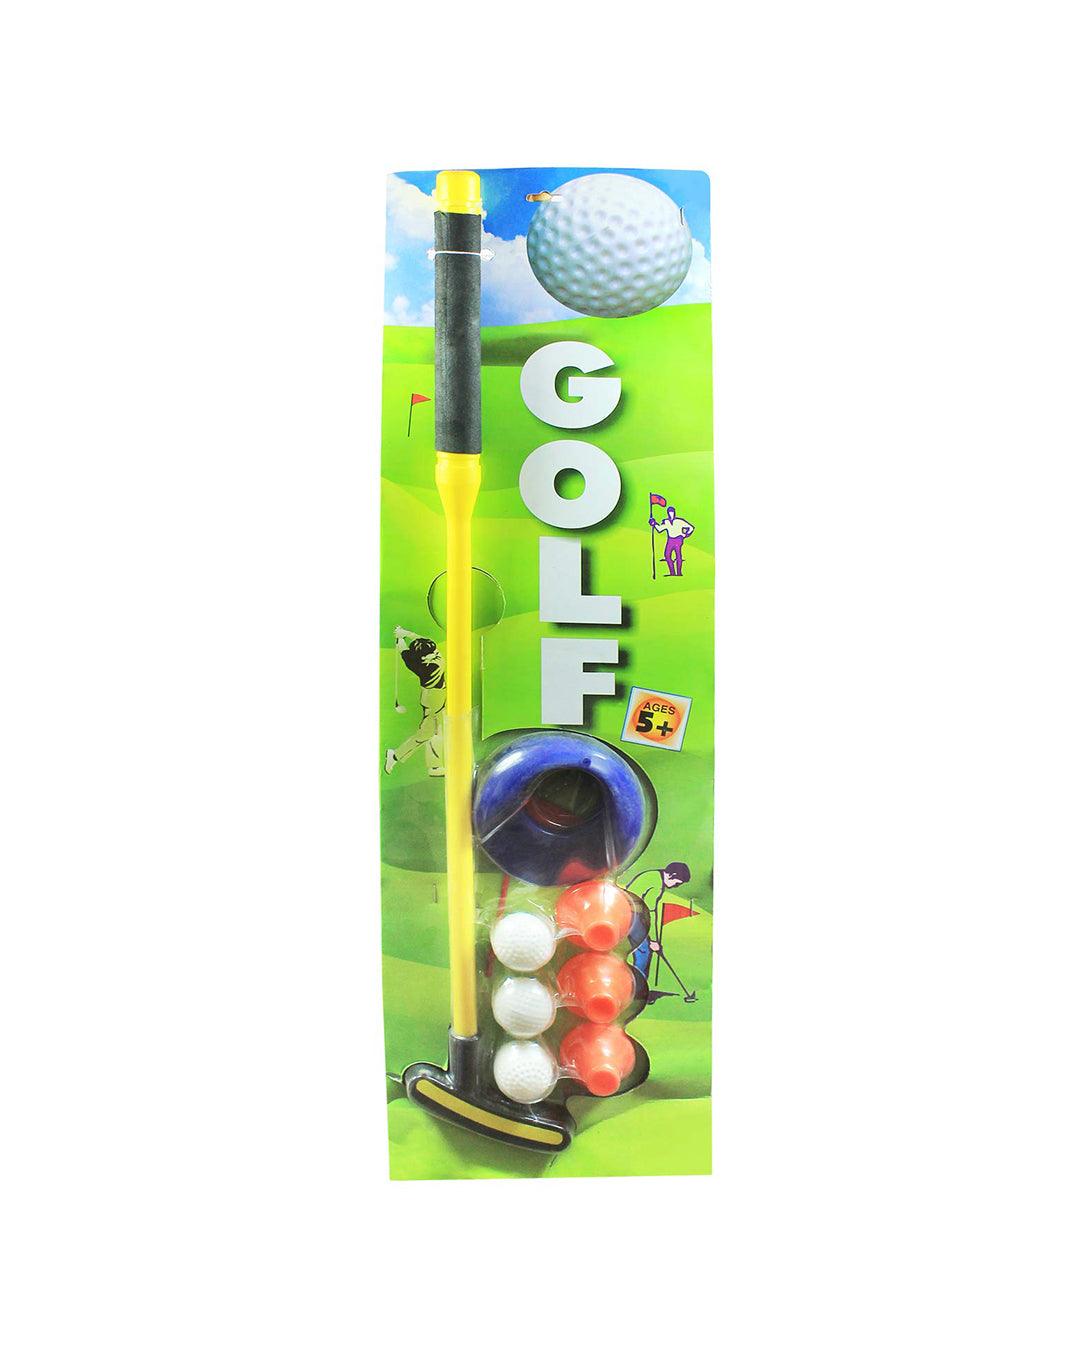 EKTA Golf Set Single Indoor Fun Game for Kids - For Child Age 5 & Up - MARKET 99